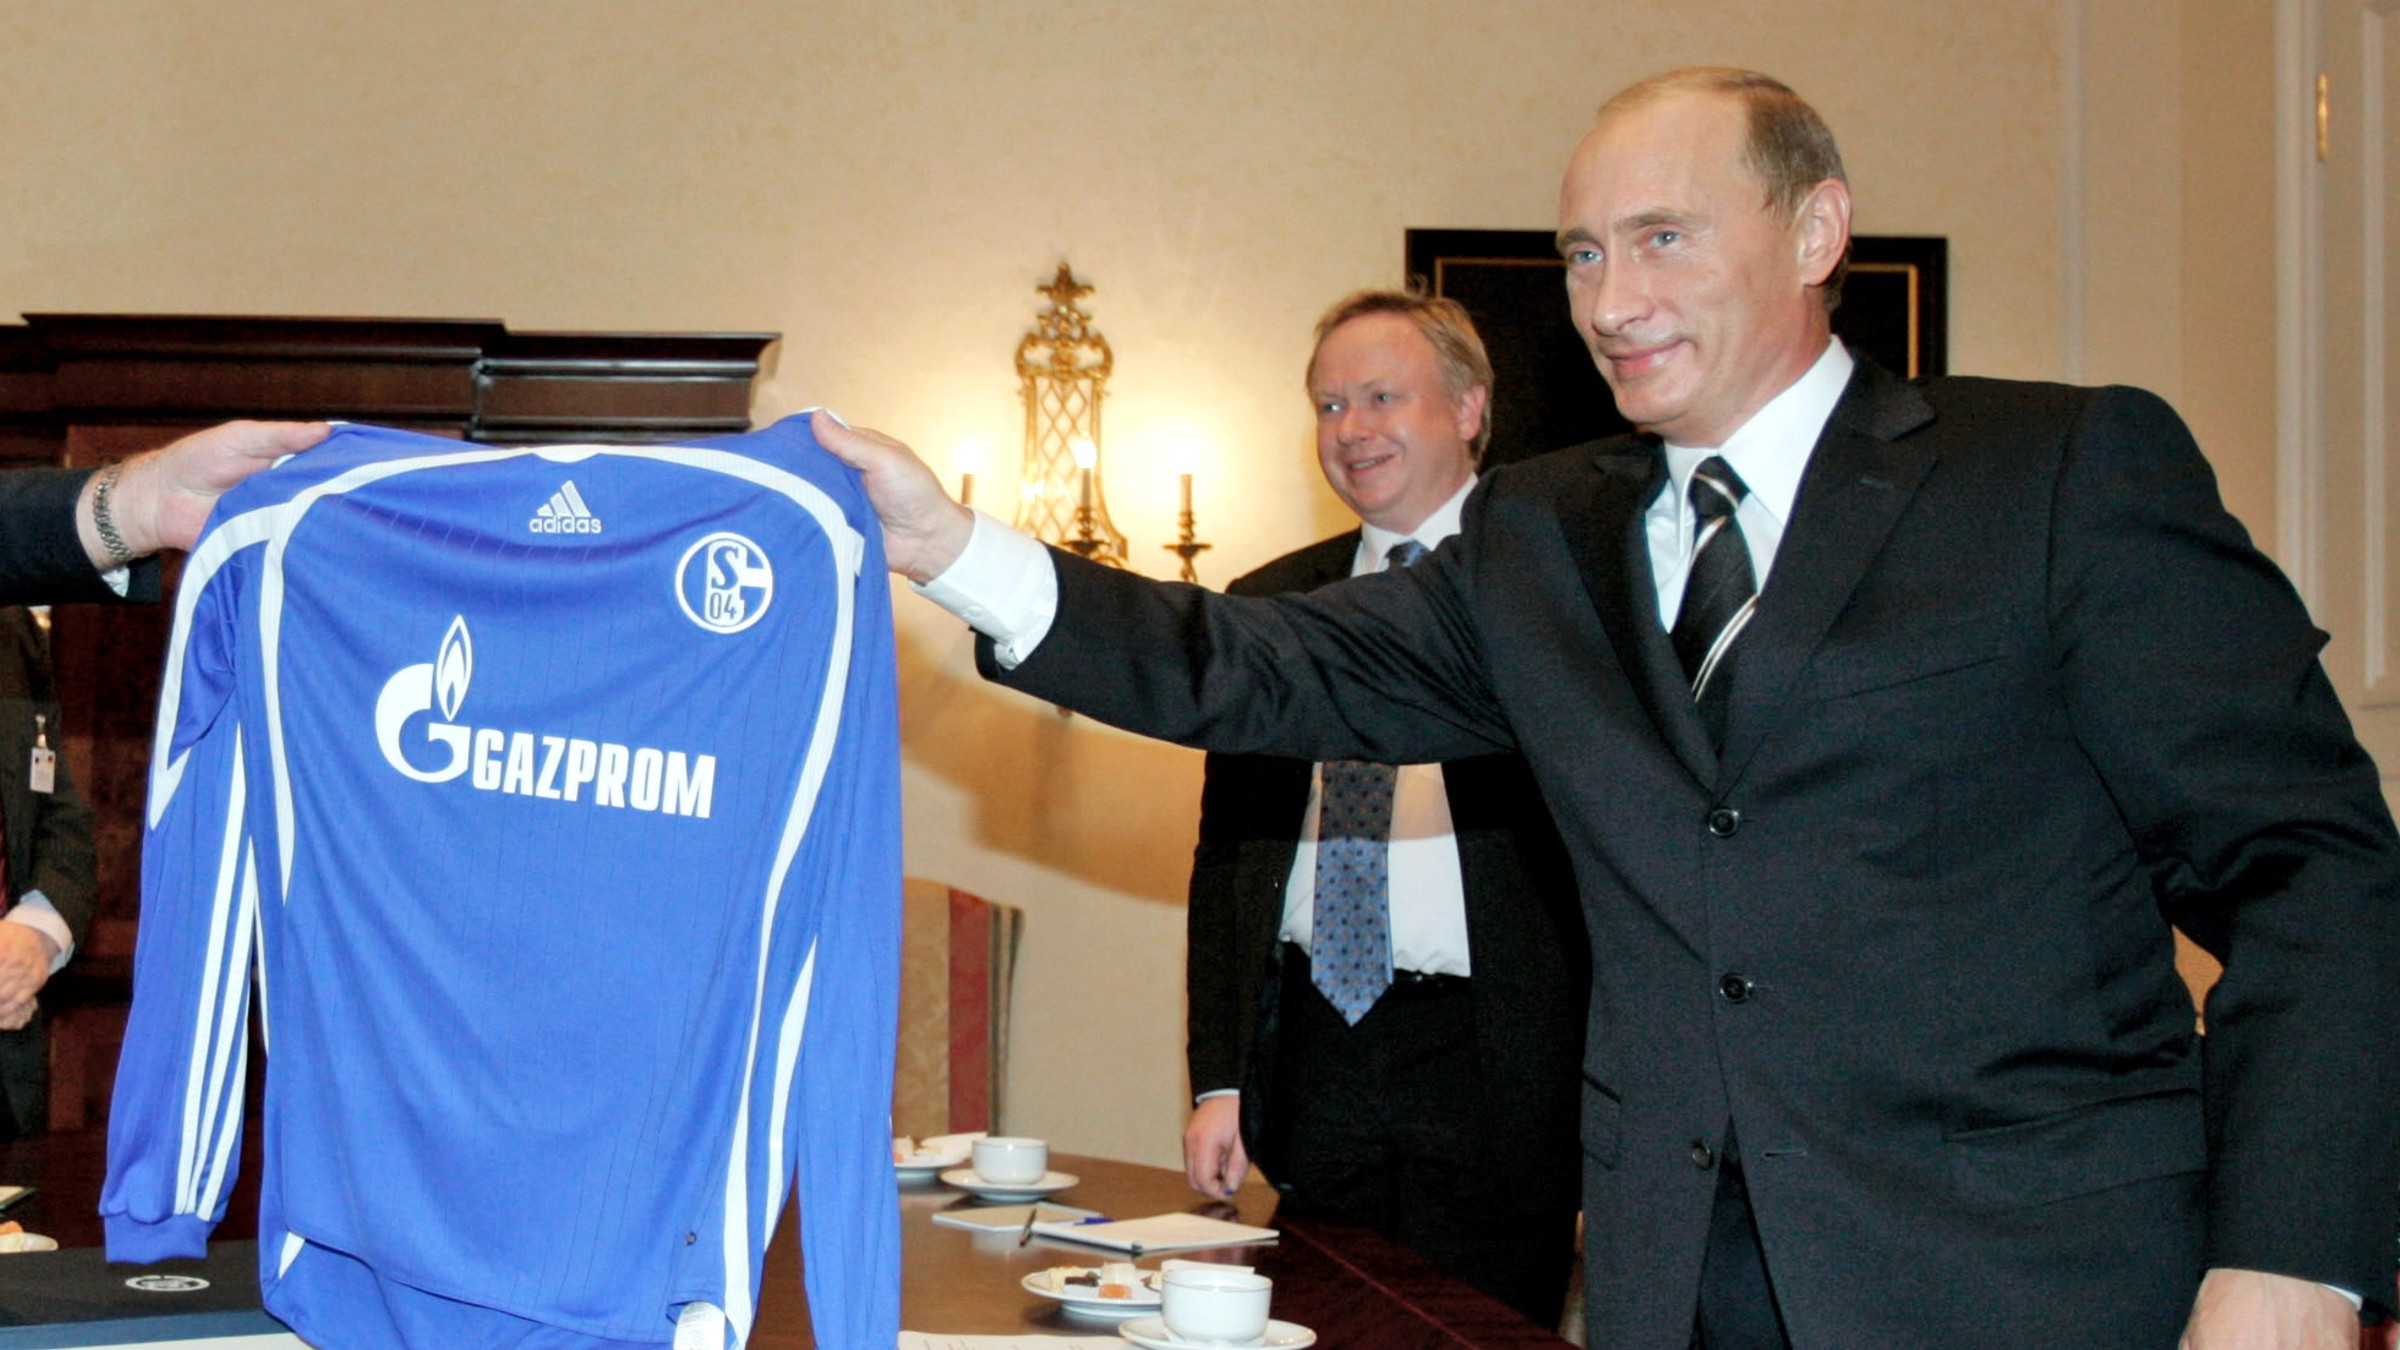 Ruský prezident Vladimir Putin drží dres nemeckého futbalového klubu z Gelsenkirchenu s logom nového sponzora Gazprom v roku 2006.